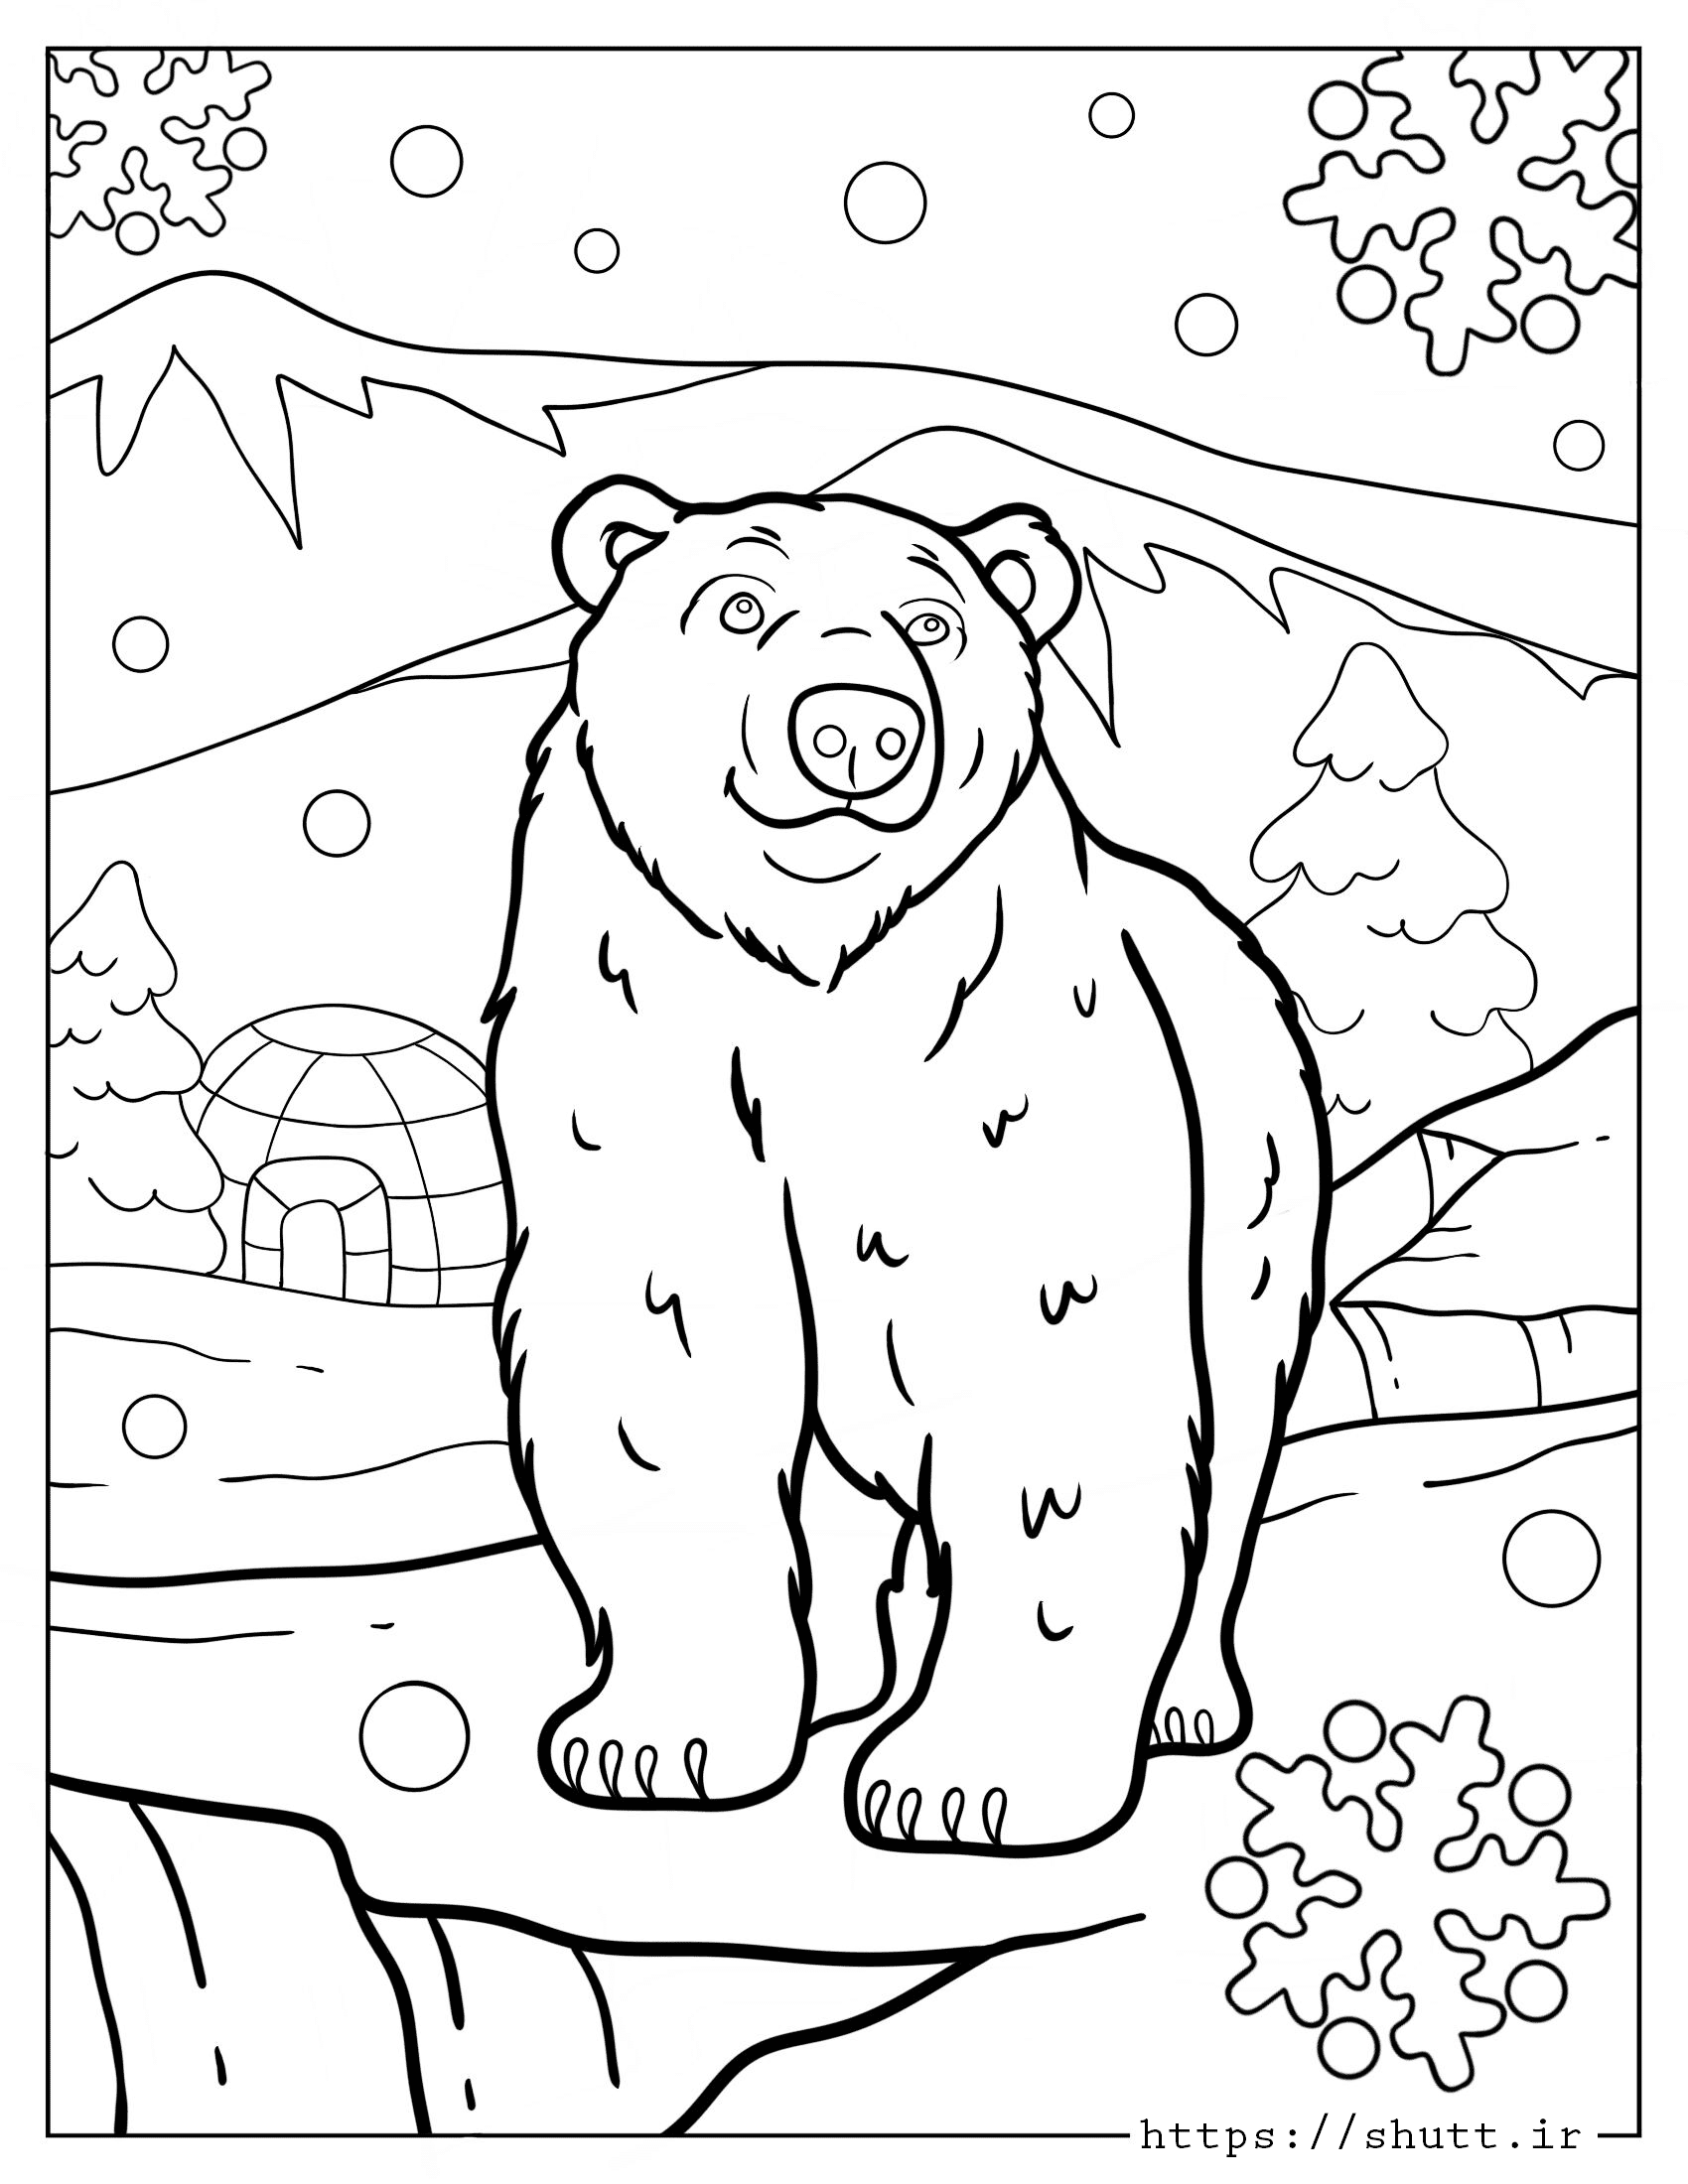 رنگ آمیزی نقاشی خرس